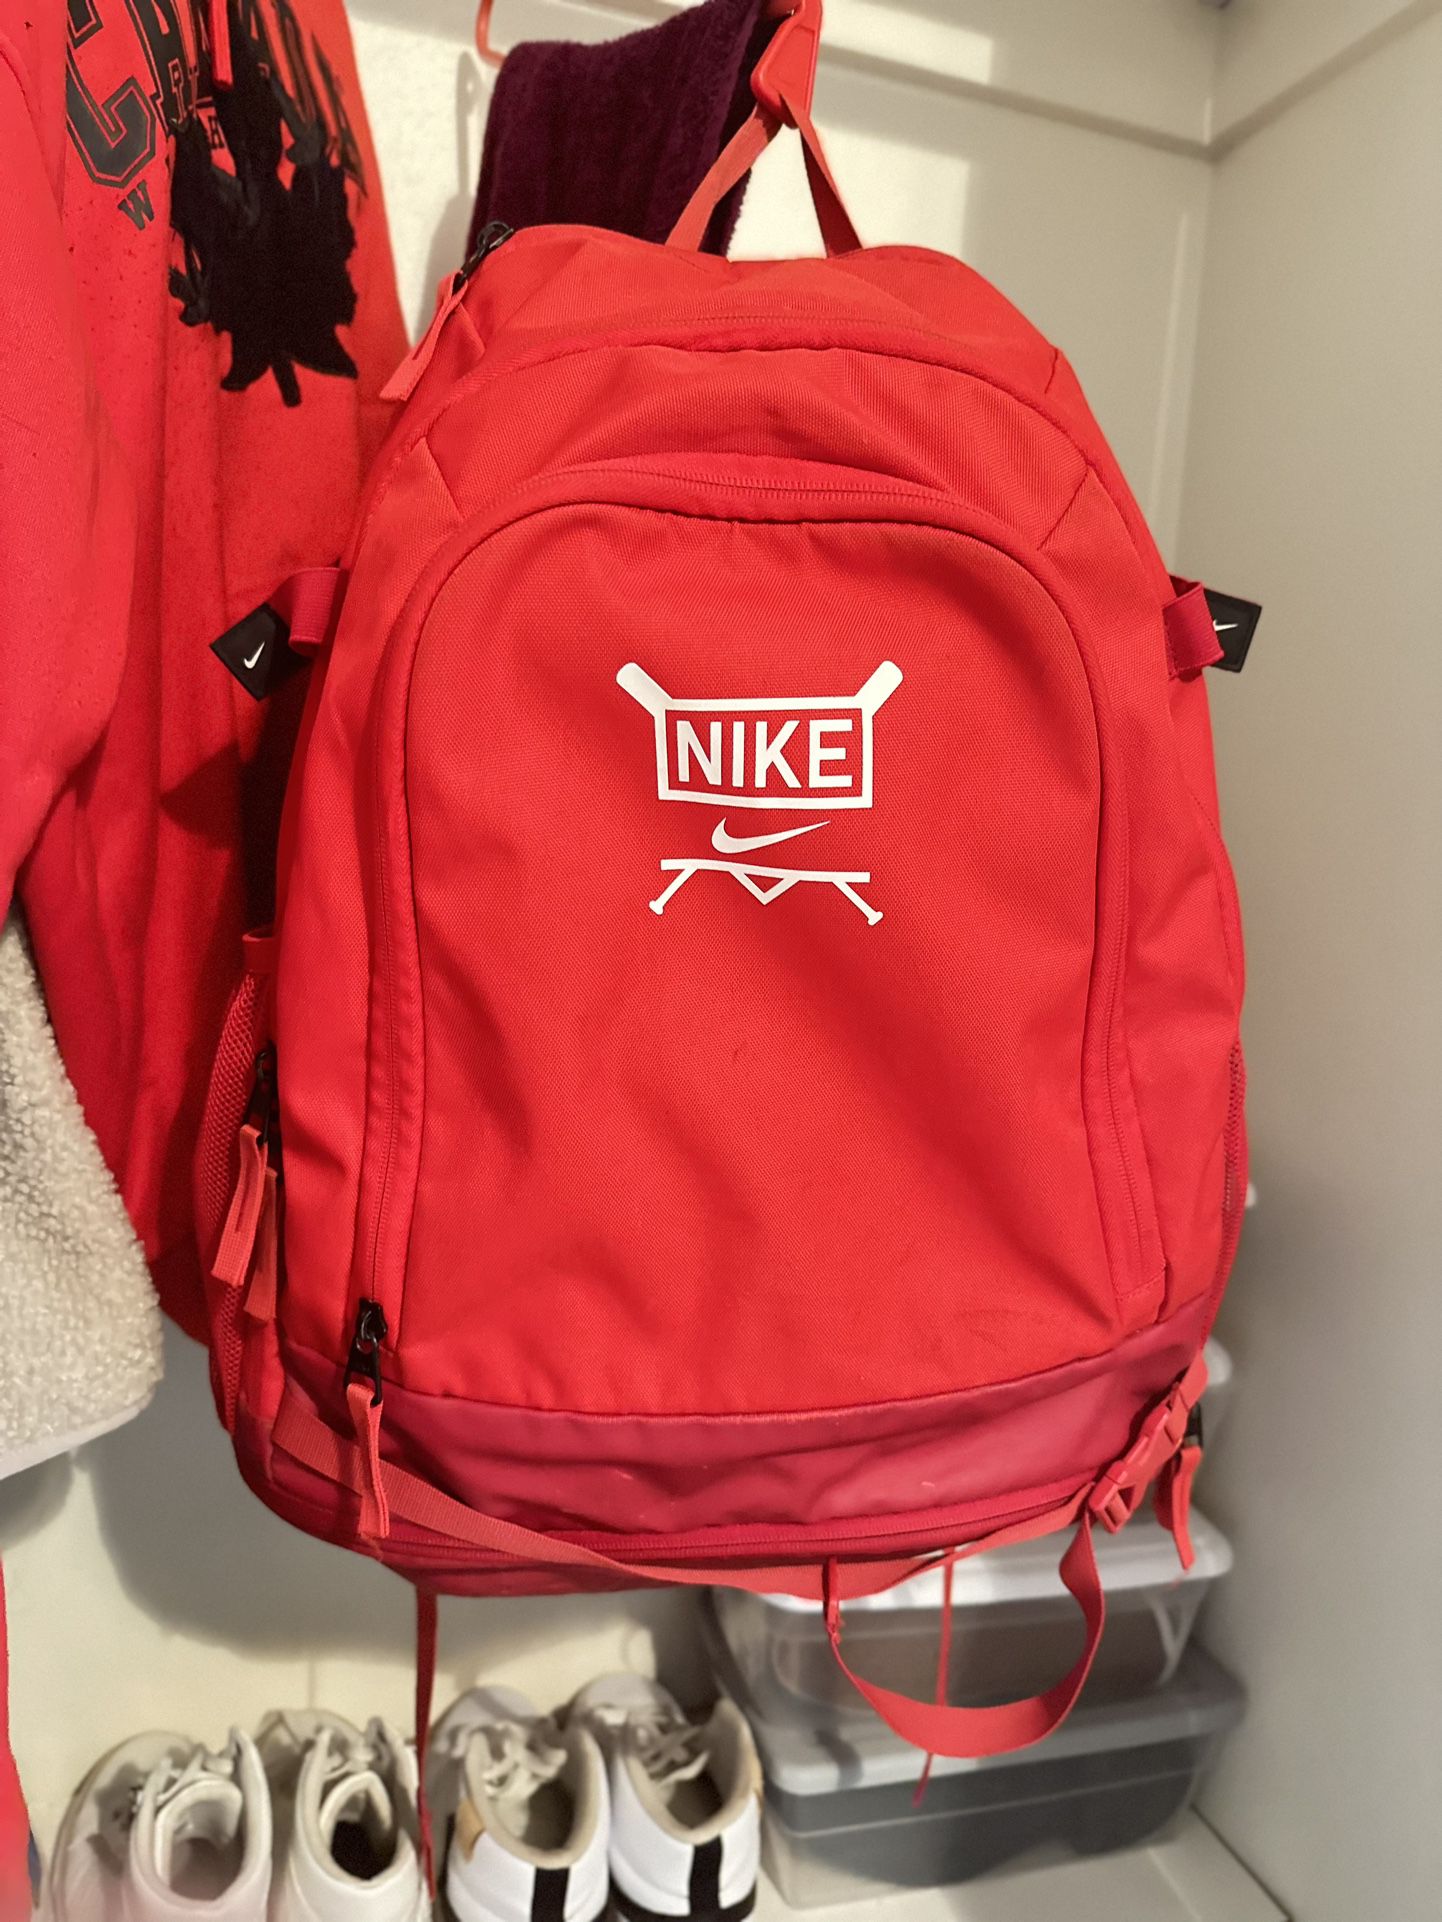 Nike Vapor Select Baseball Bat Backpack